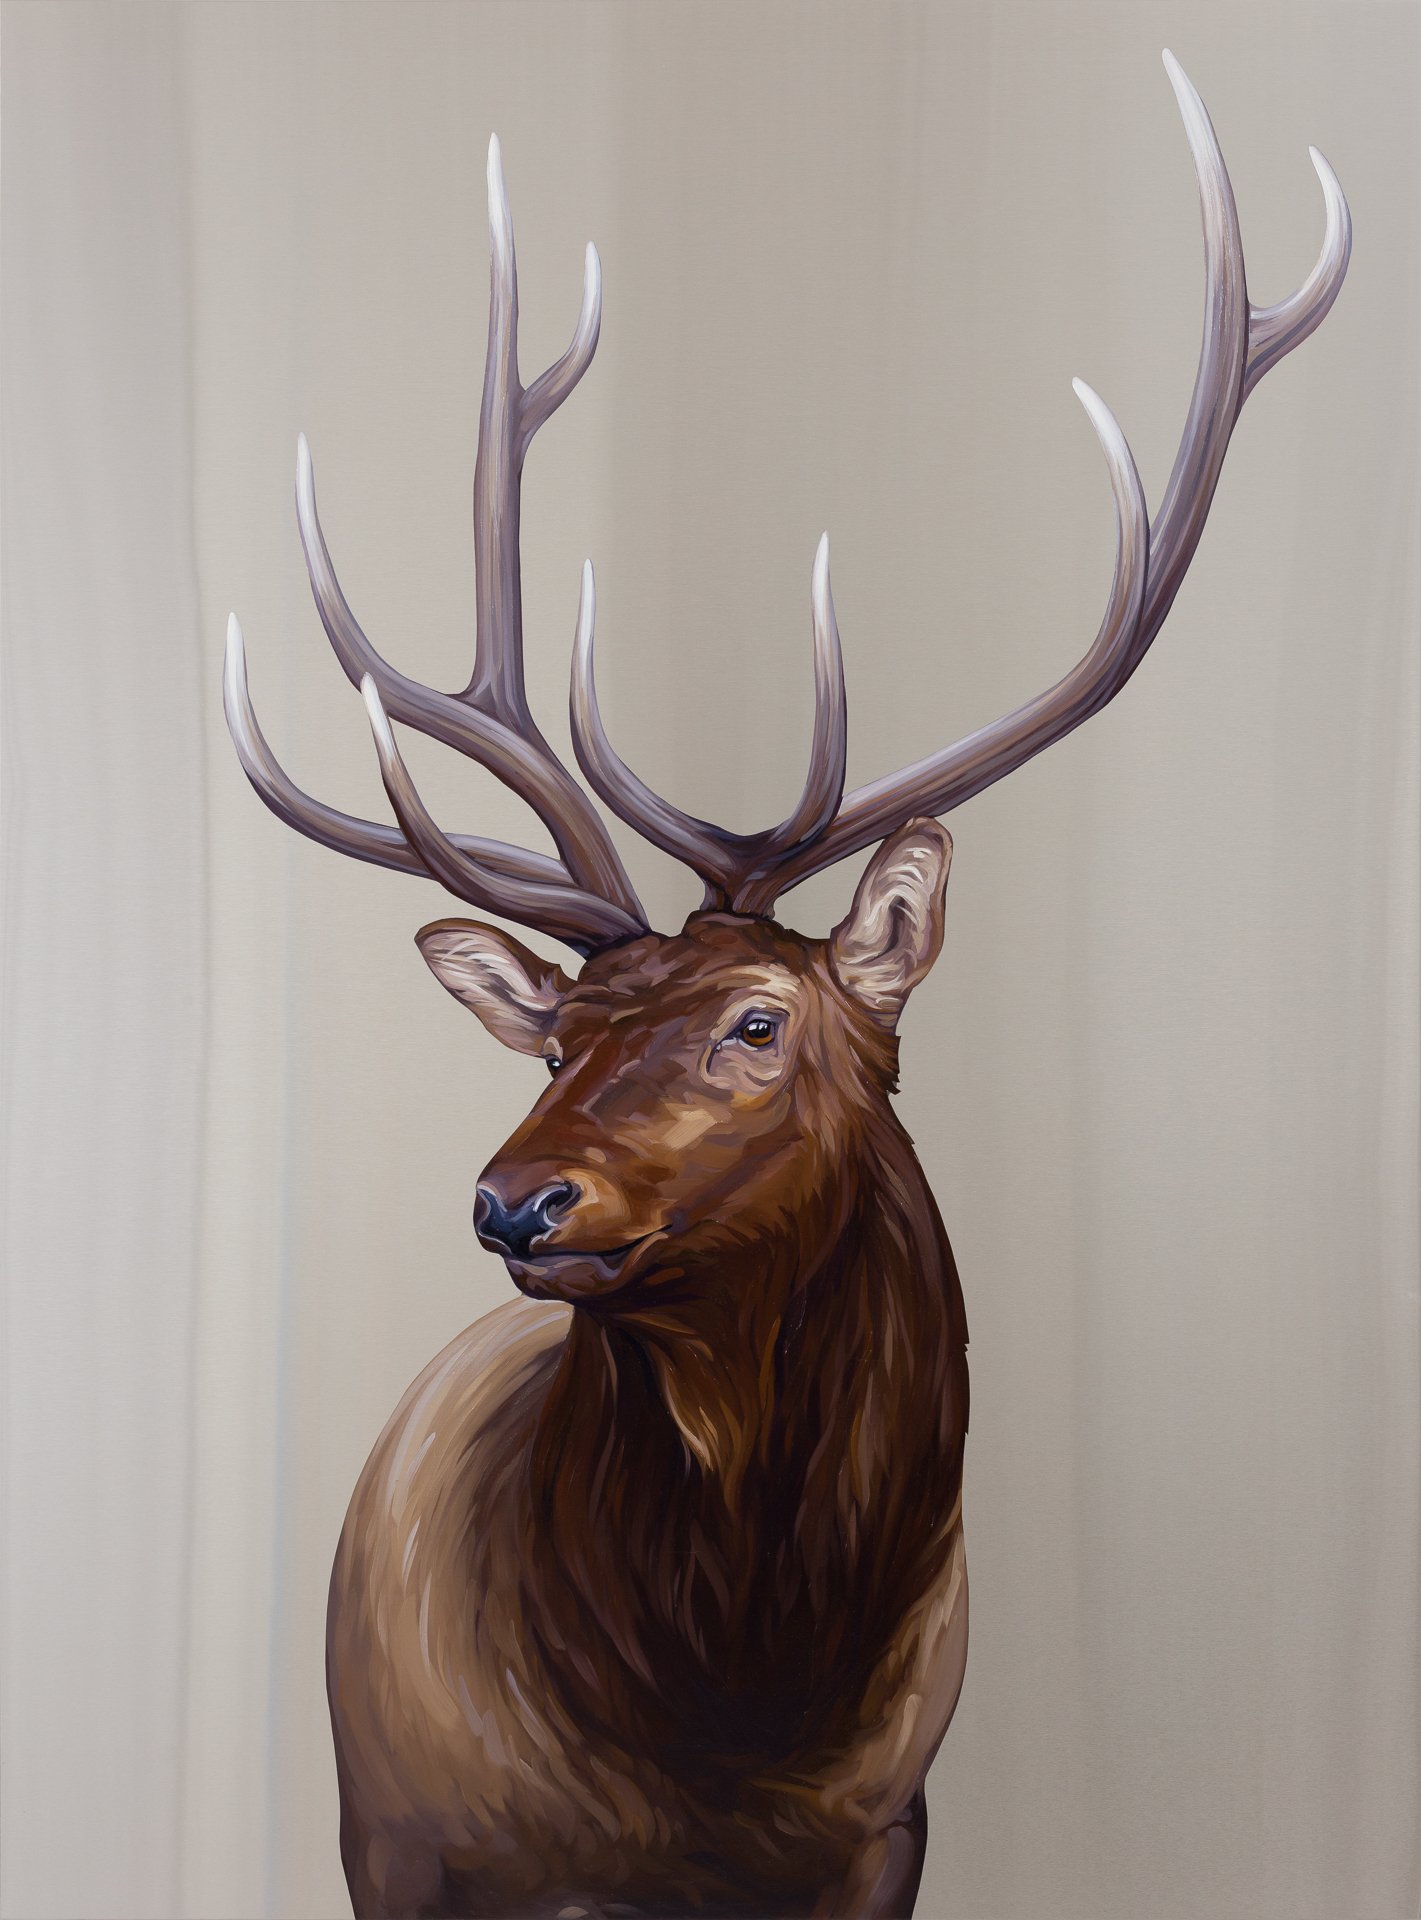  Elk. Oil on stainless steel, 48in x 36in 